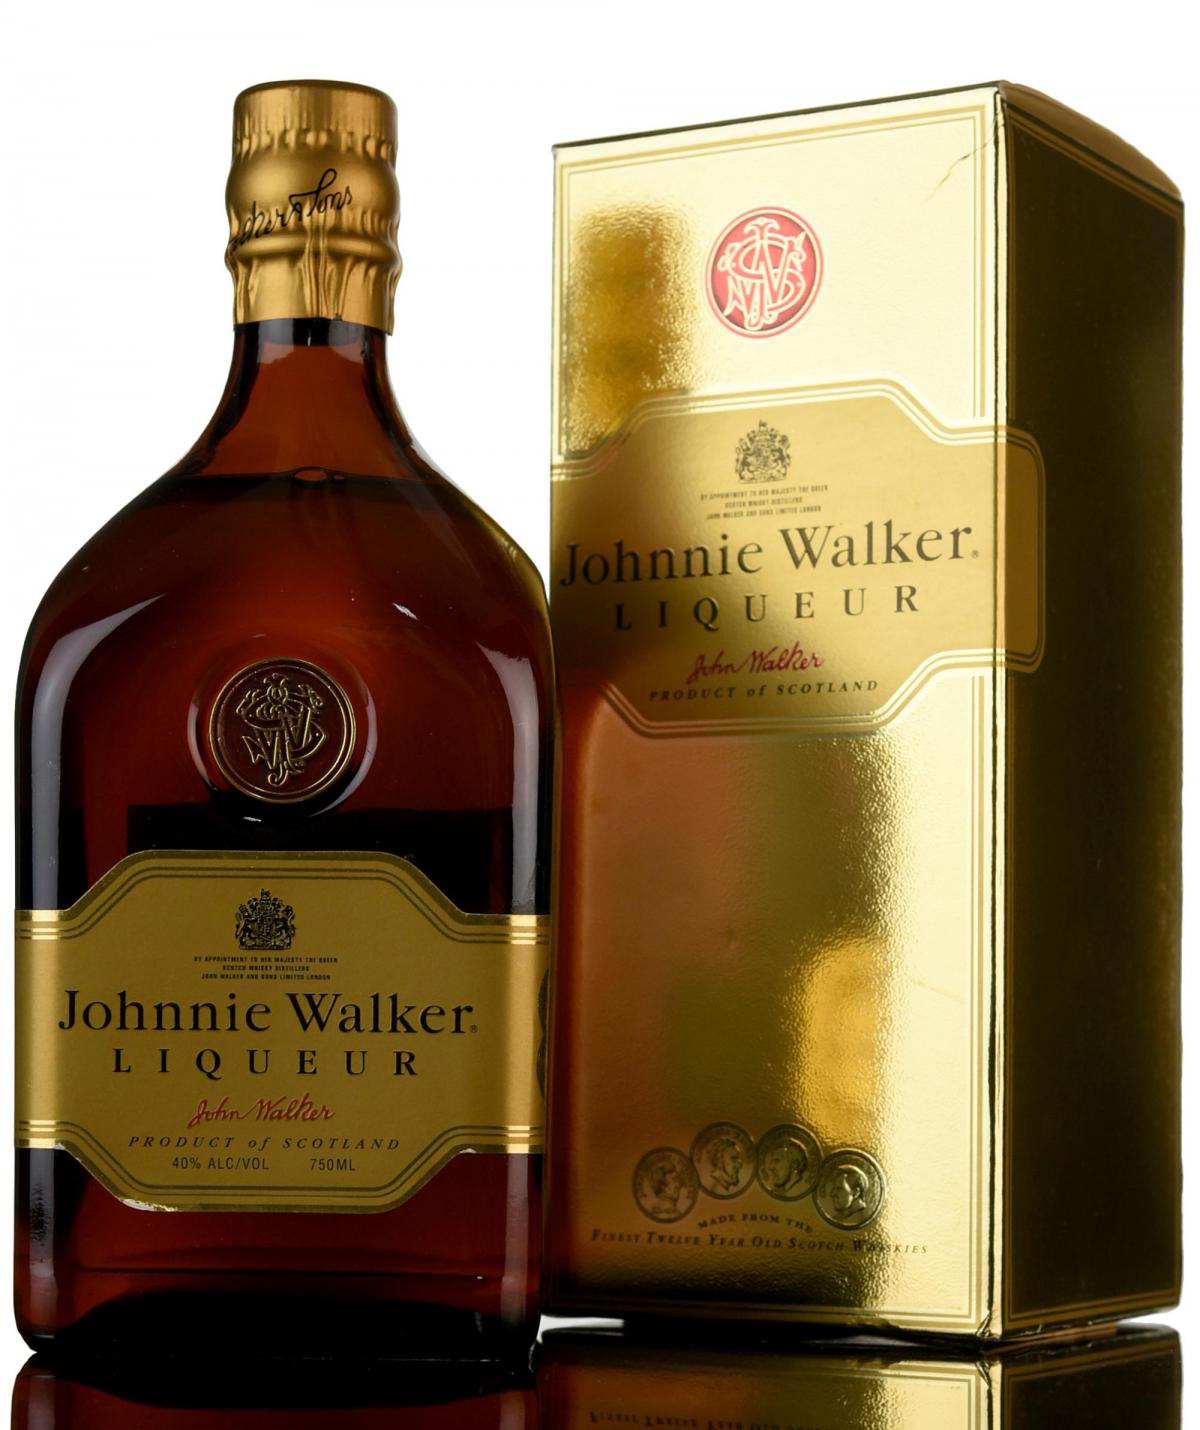 Johnnie Walker Liqueur